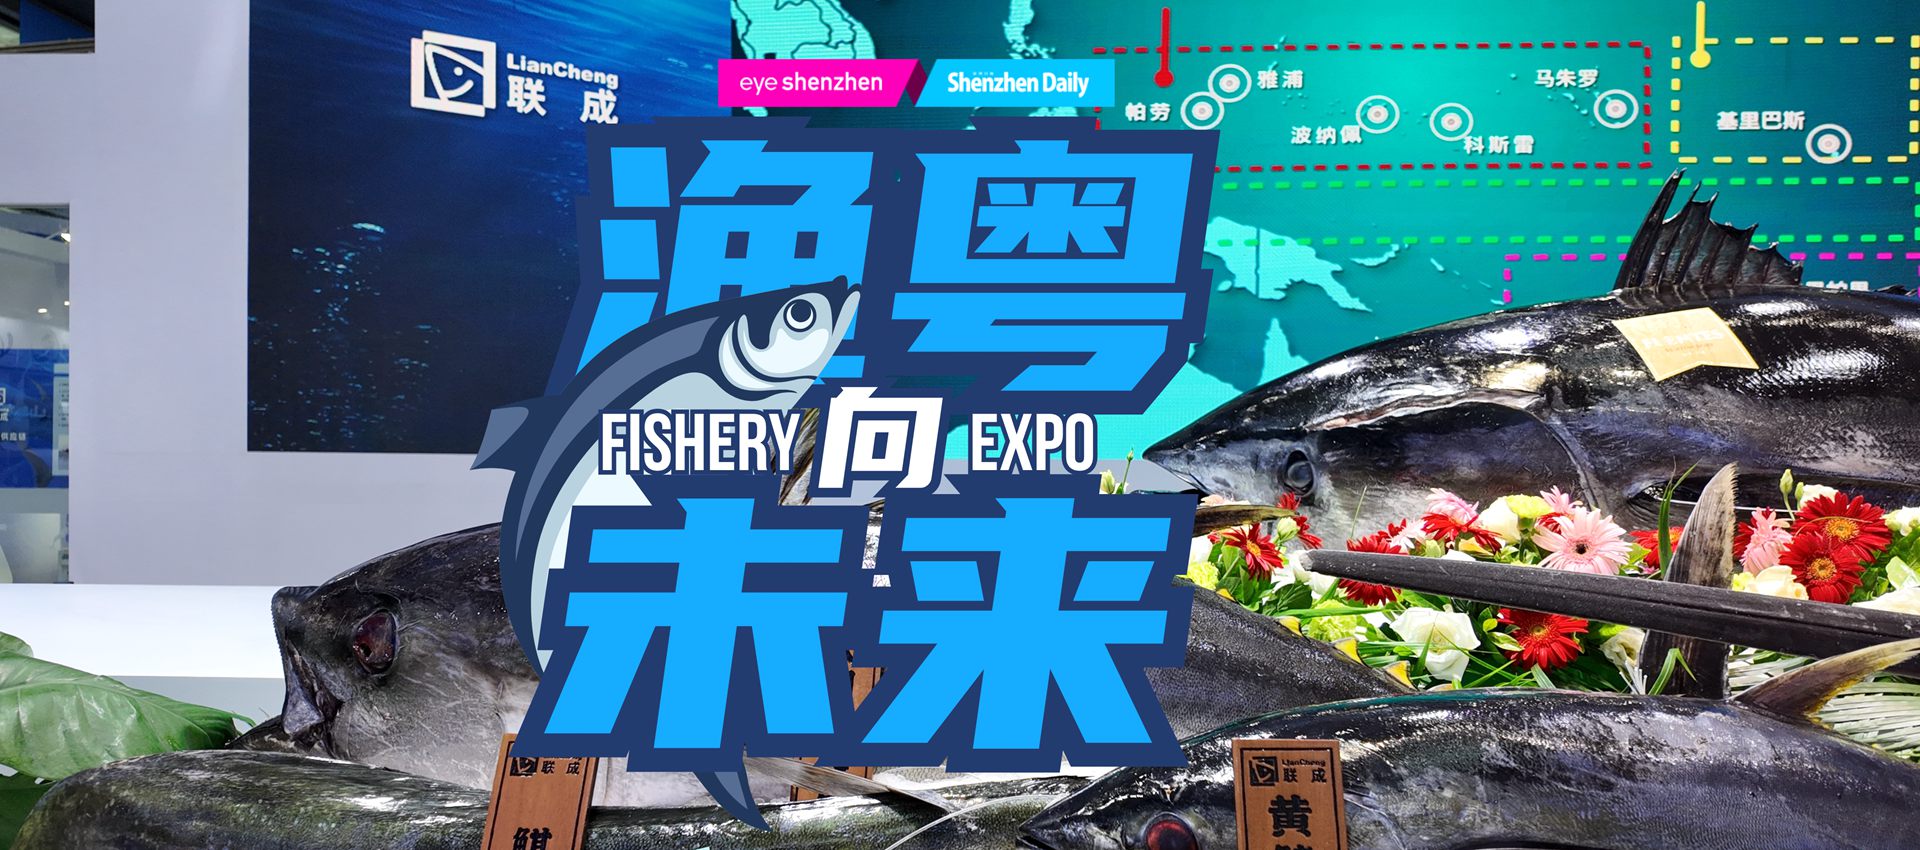 Fishery Expo